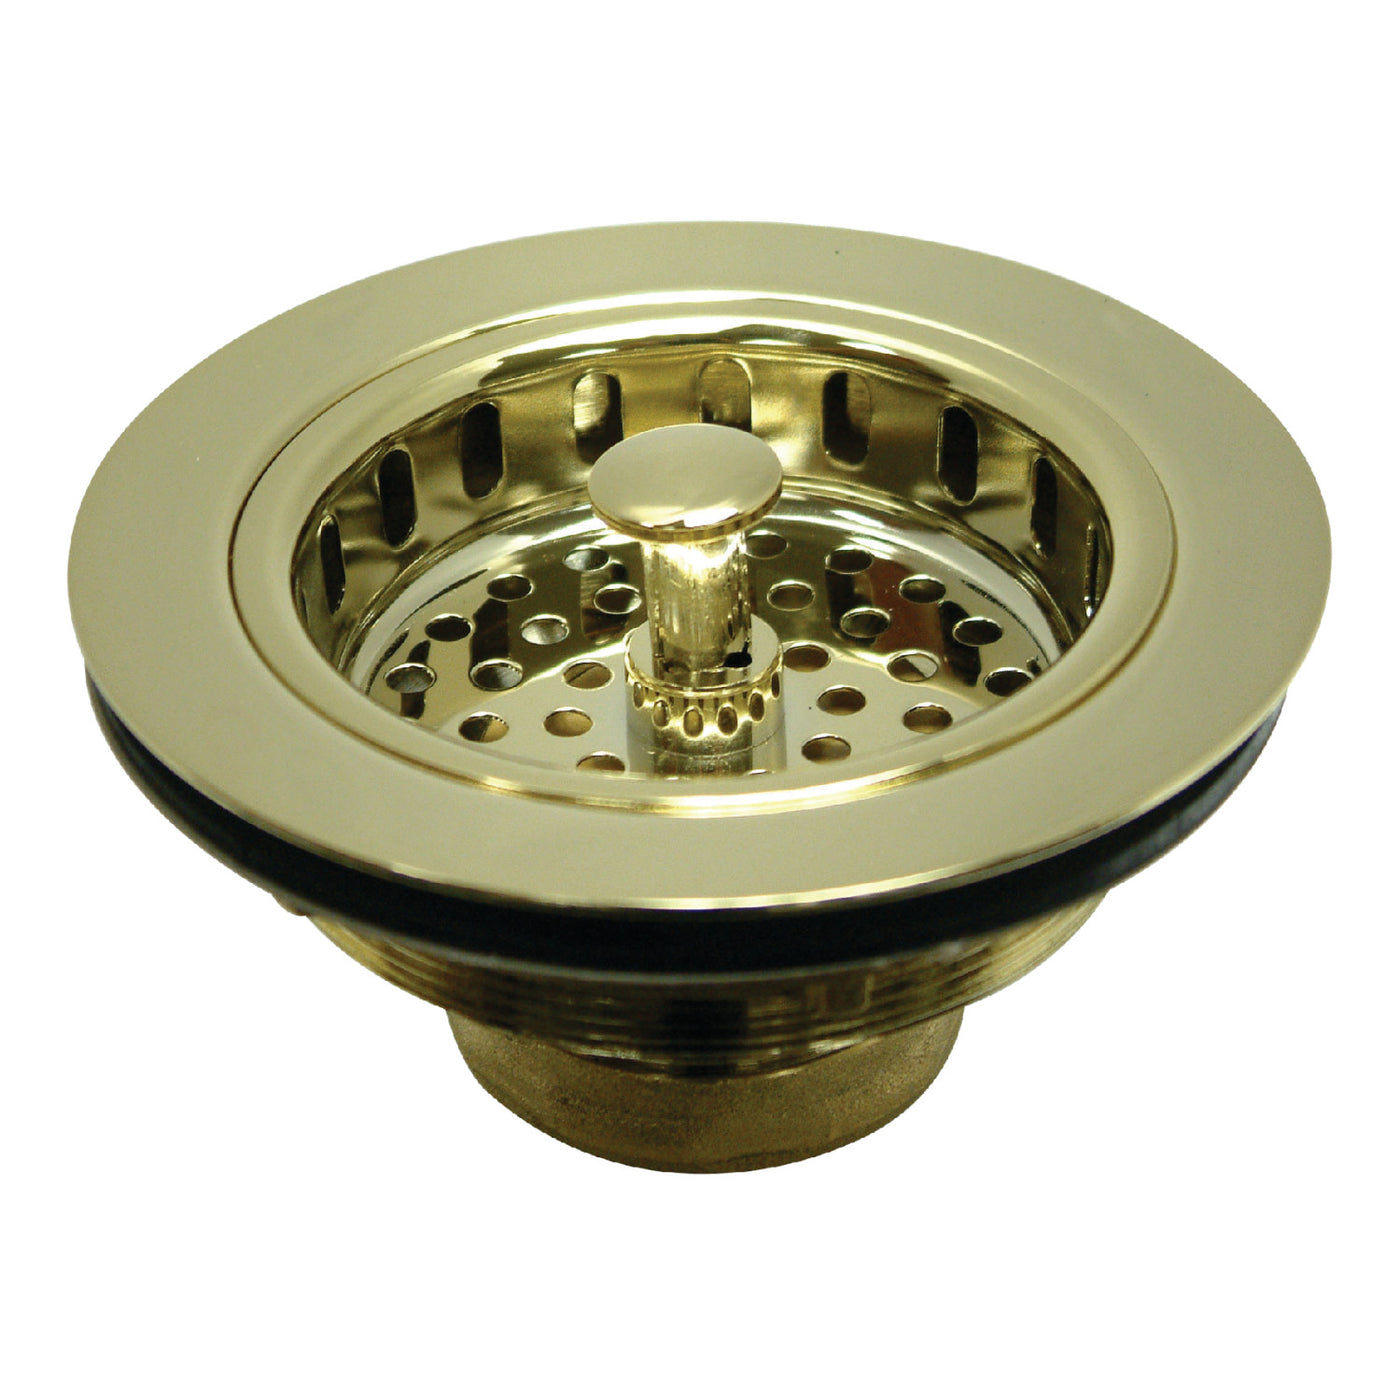 Elements of Design EBS1002 Kitchen Sink Basket Strainer, Polished Brass